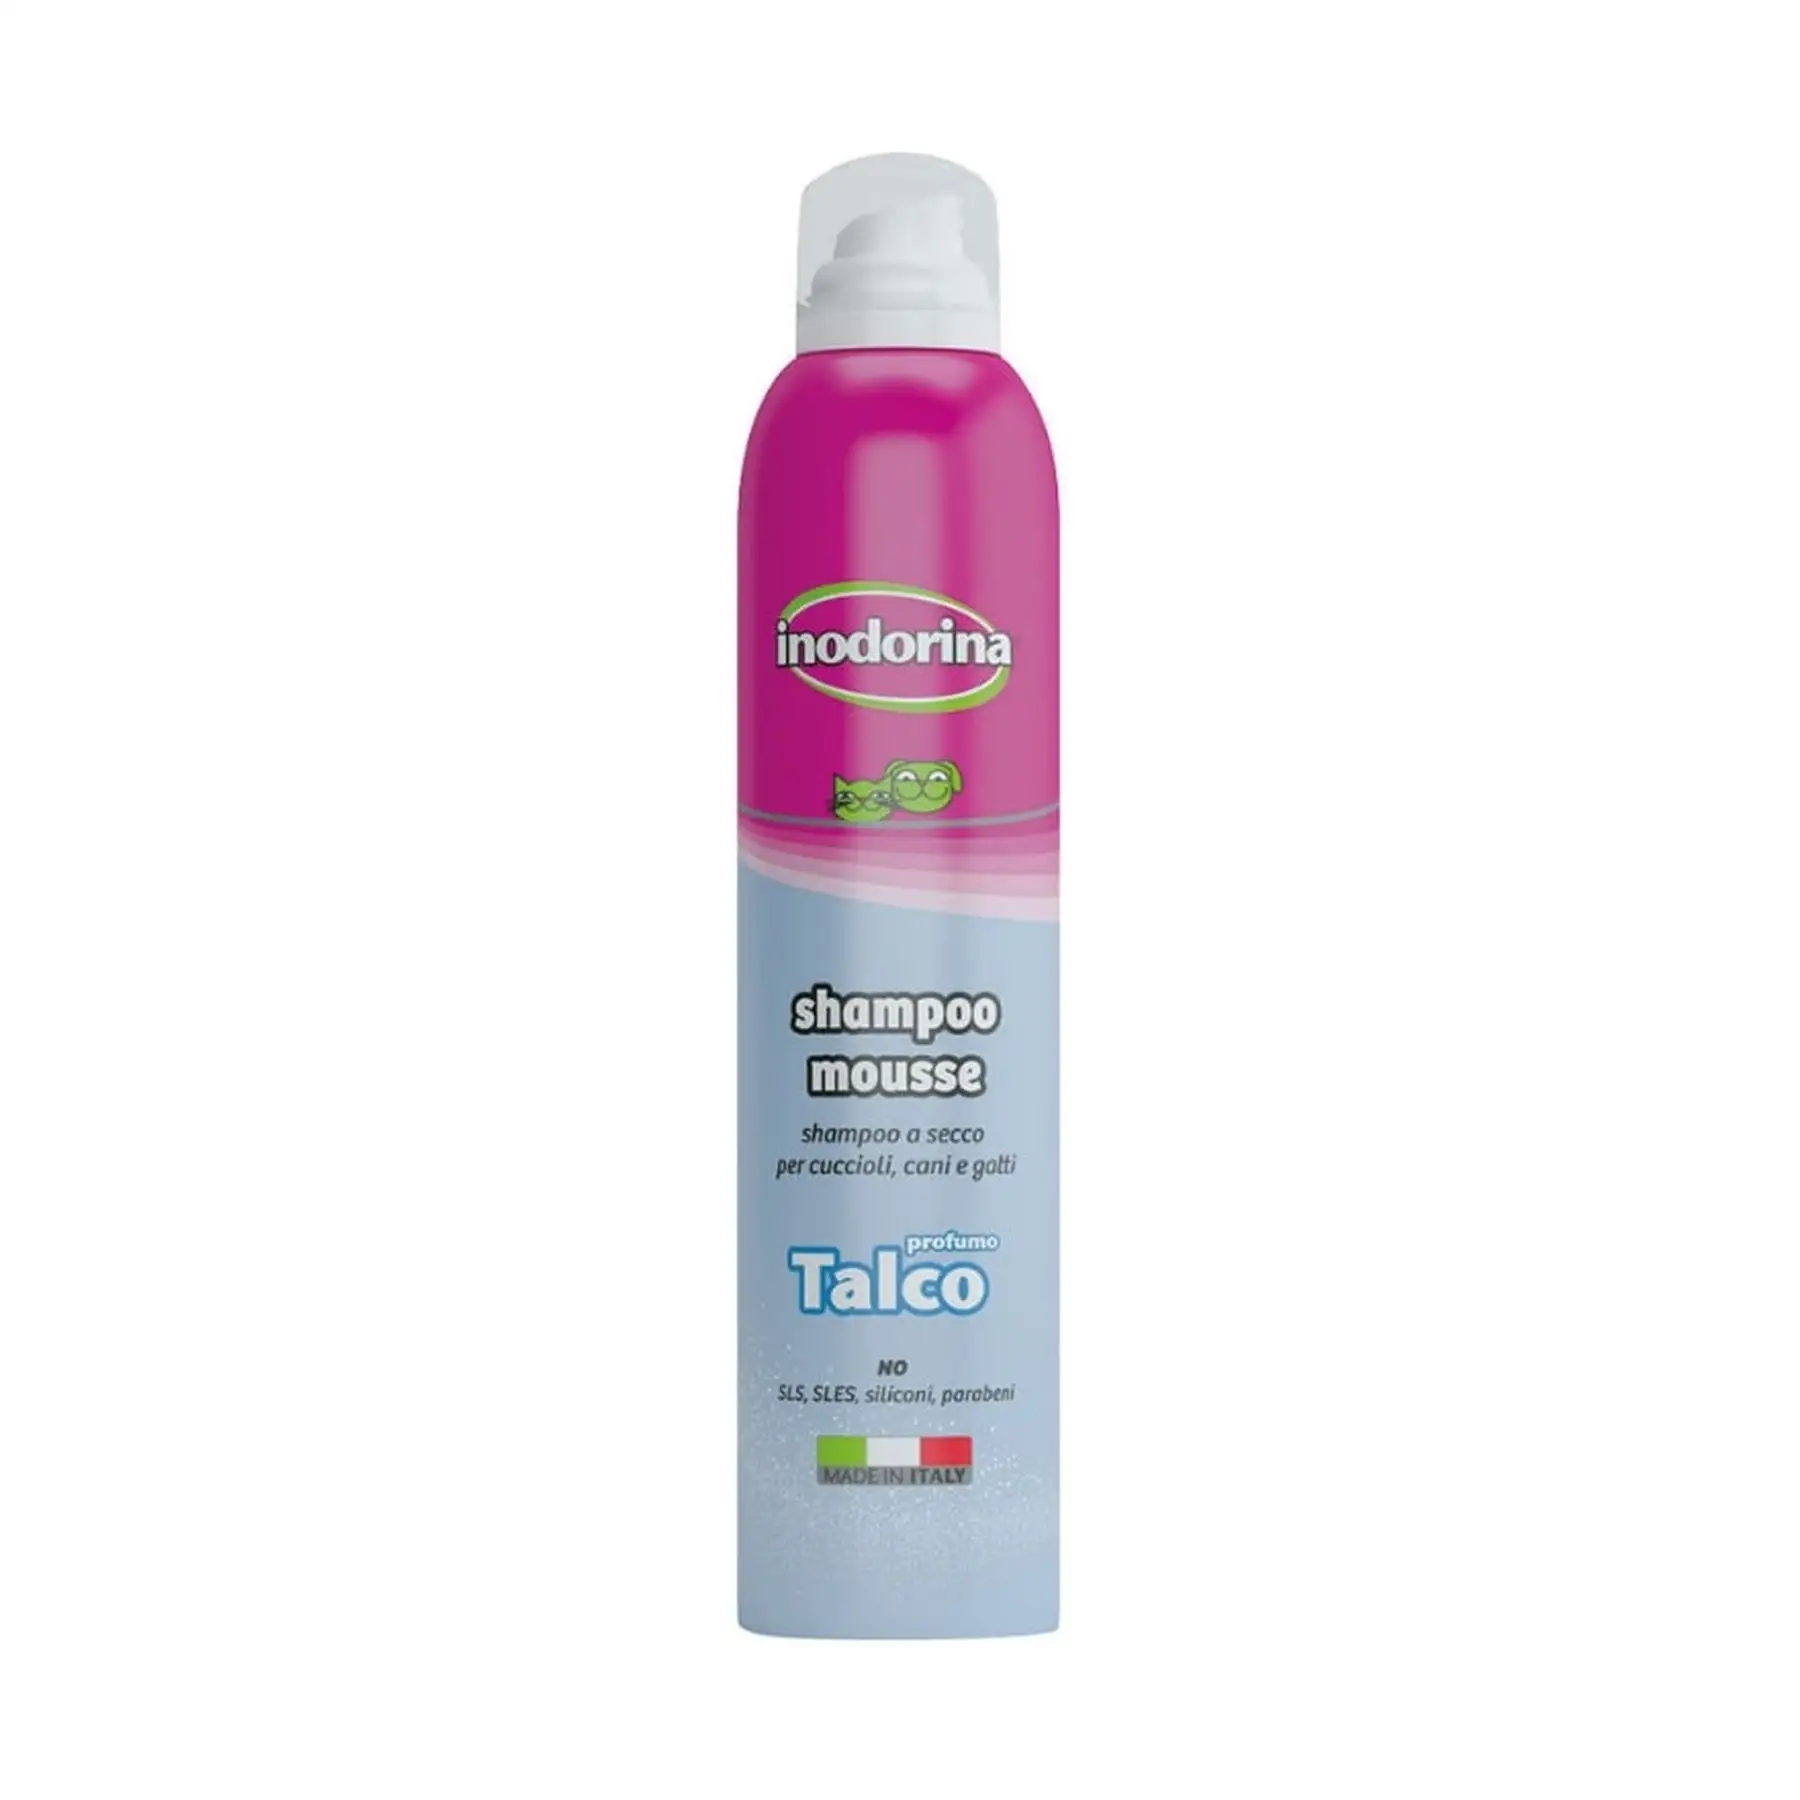 Shampoo di talco Premium con Mousse-Formula a secco per una pulizia rapida da 300 ml, ideale per una freschezza in movimento